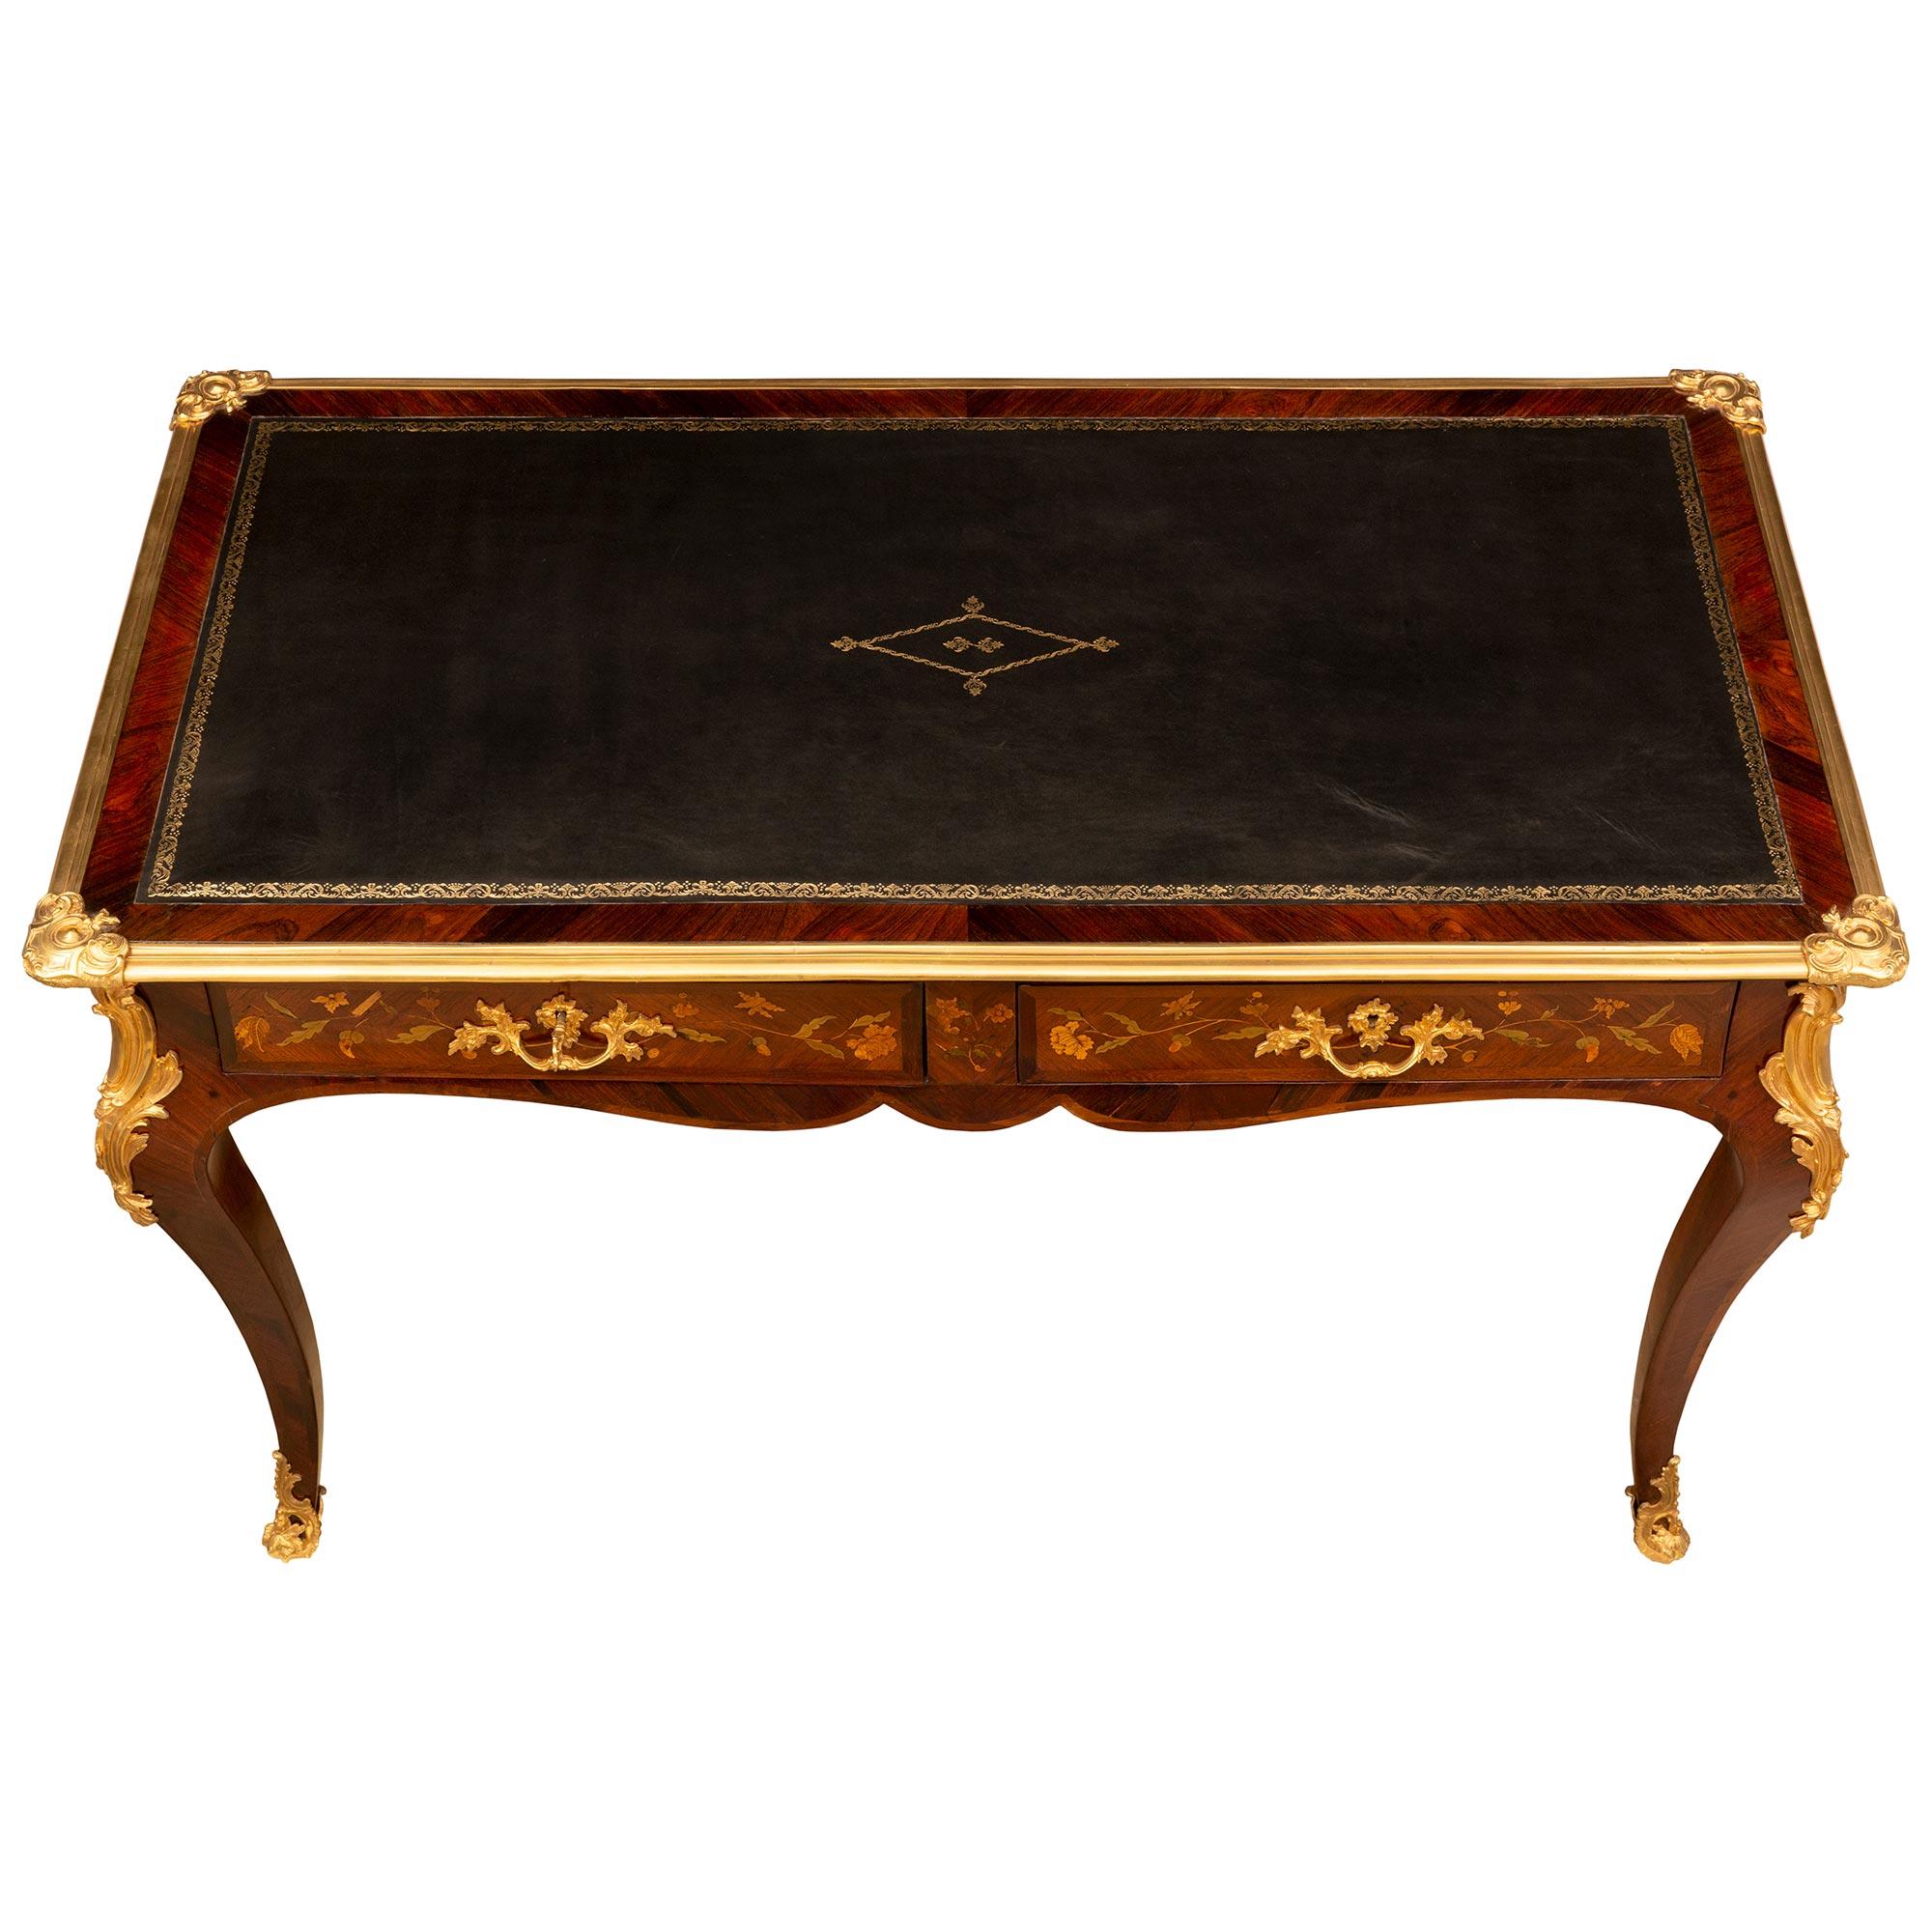 Exceptionnel et très élégant bureau plat en bois de rose, bois exotique et bronze doré de style Louis XV du début du XIXe siècle. Le bureau repose sur des pieds cabriole avec des sabots en bronze doré finement percés et ajustés, ainsi que des